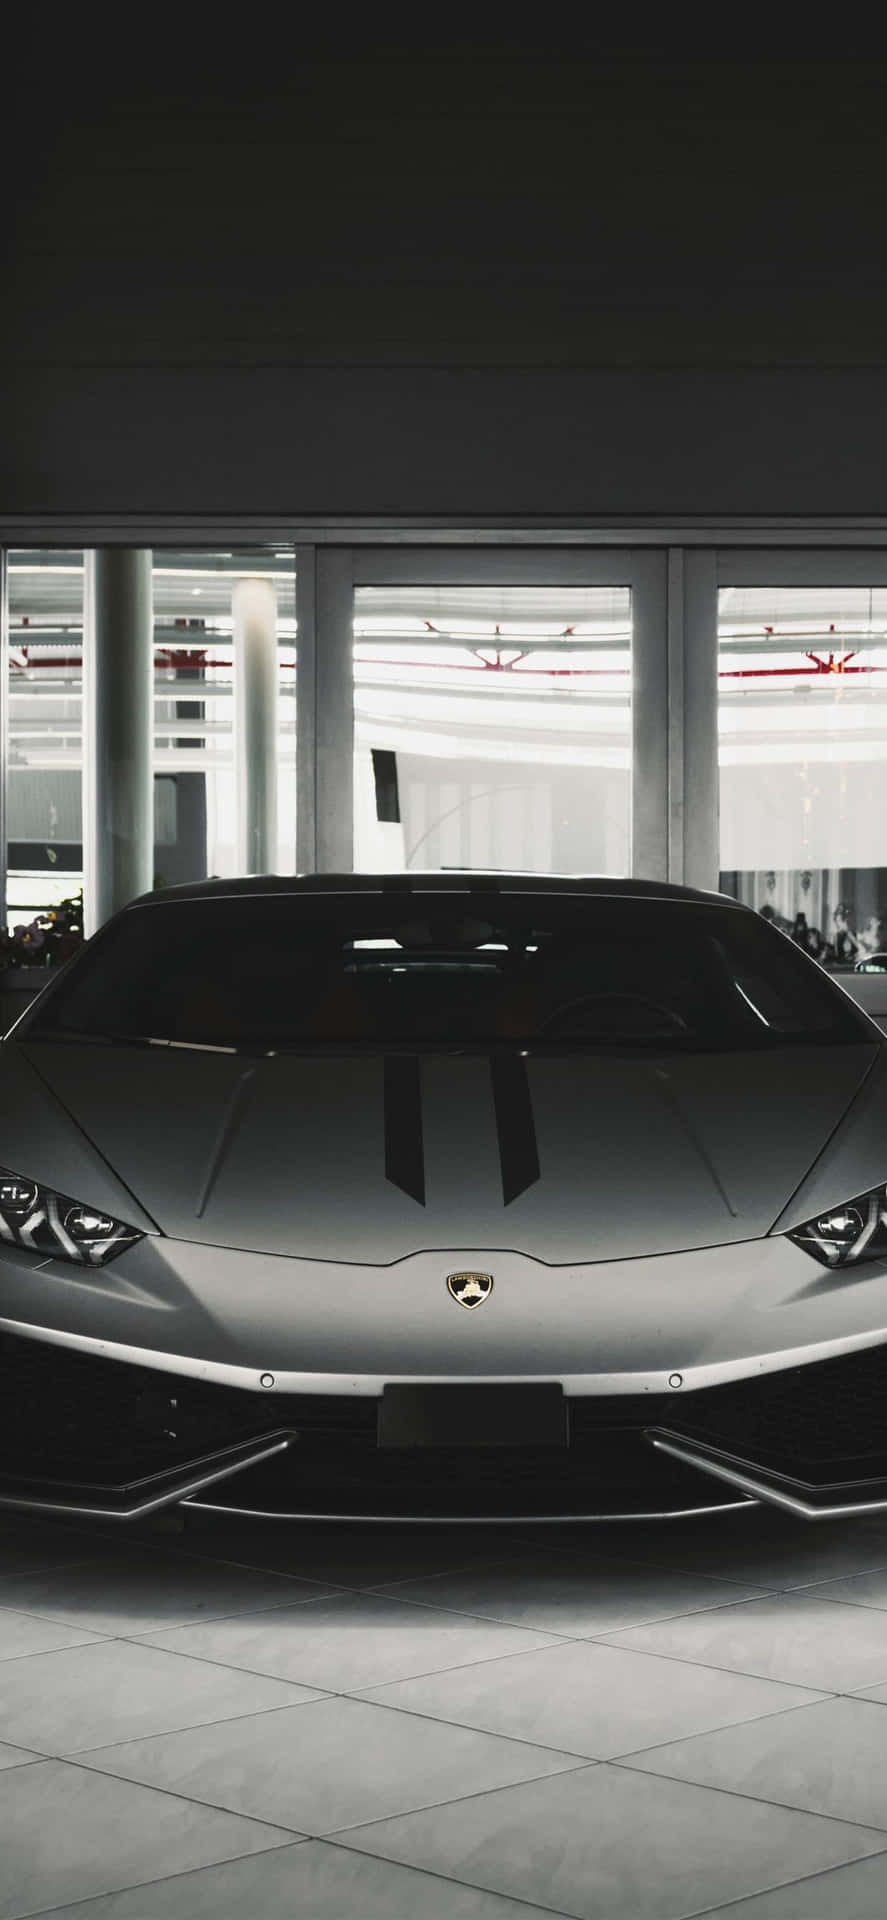 Black Lamborghini Iphone Front View Wallpaper